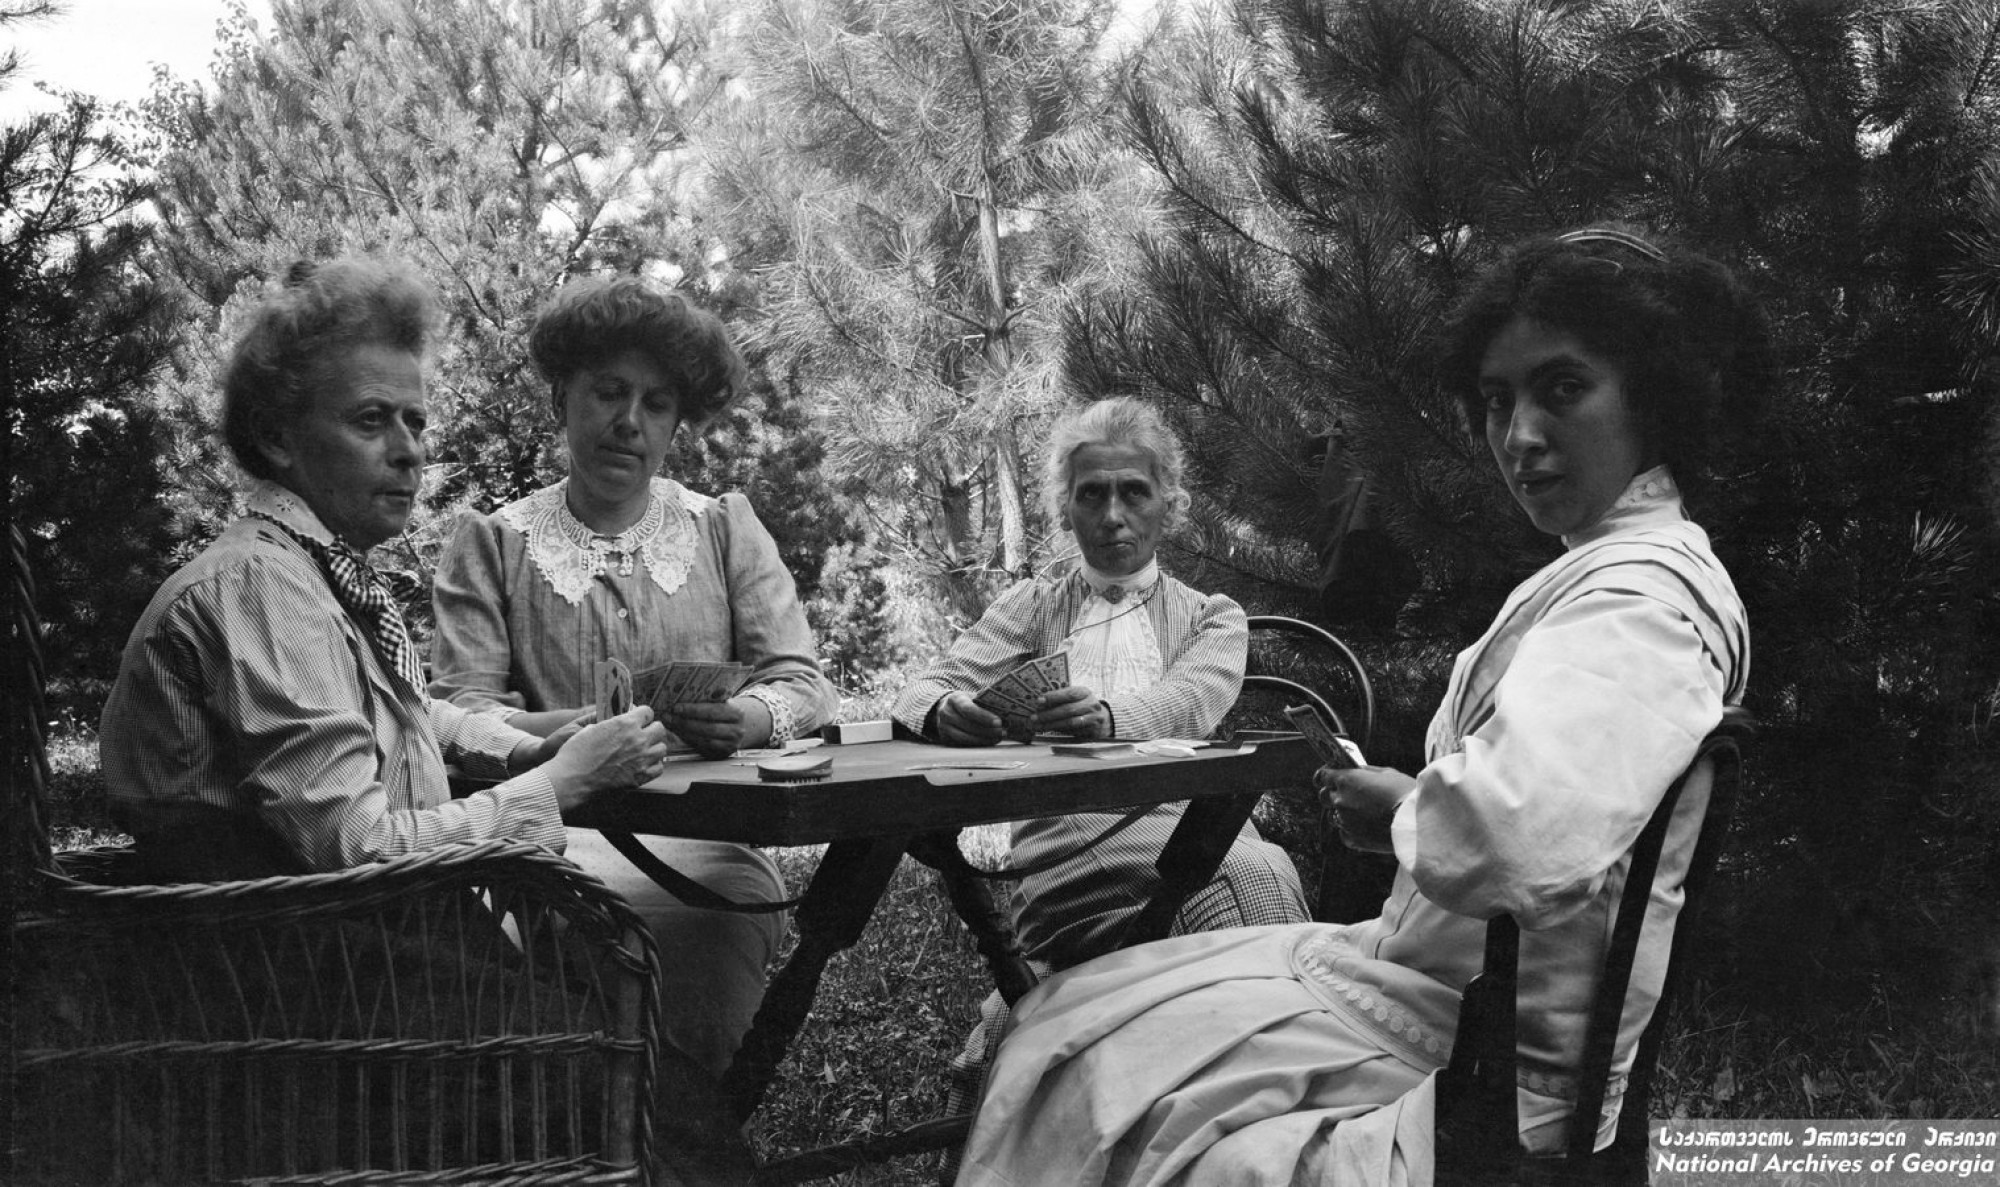 ნიკო ნიკოლაძის დები ანასტასია და ეკატერინე ნიკოლაძეები თამაშობენ ბანქოს კლარა ტიტელი-გურამიშვილთან და რუსუდან ნიკოლაძესთან ერთად.<br>
დიდი ჯიხაიში, სამტრედია. <br> ფოტო: გიორგი ნიკოლაძე. <br>
1910. <br> 
Niko Nikoladze’s sisters, Anastasia and Ekaterine playing cards together with Rusudan Nikoladze and Klara Titeli-Guramishvili. <br> 
Didi Jikhaishi, Samtredia, Georgia. <br> 
Photo: Giorgi Nikoladze. <br> 
ეკატერინე და ანასტასია ნიკოლაძეები ერთ-ერთი პირველი ქართველი ქალები იყვნენ, რომლებმაც განათლება ევროპის უნივერსიტეტში მიიღეს.